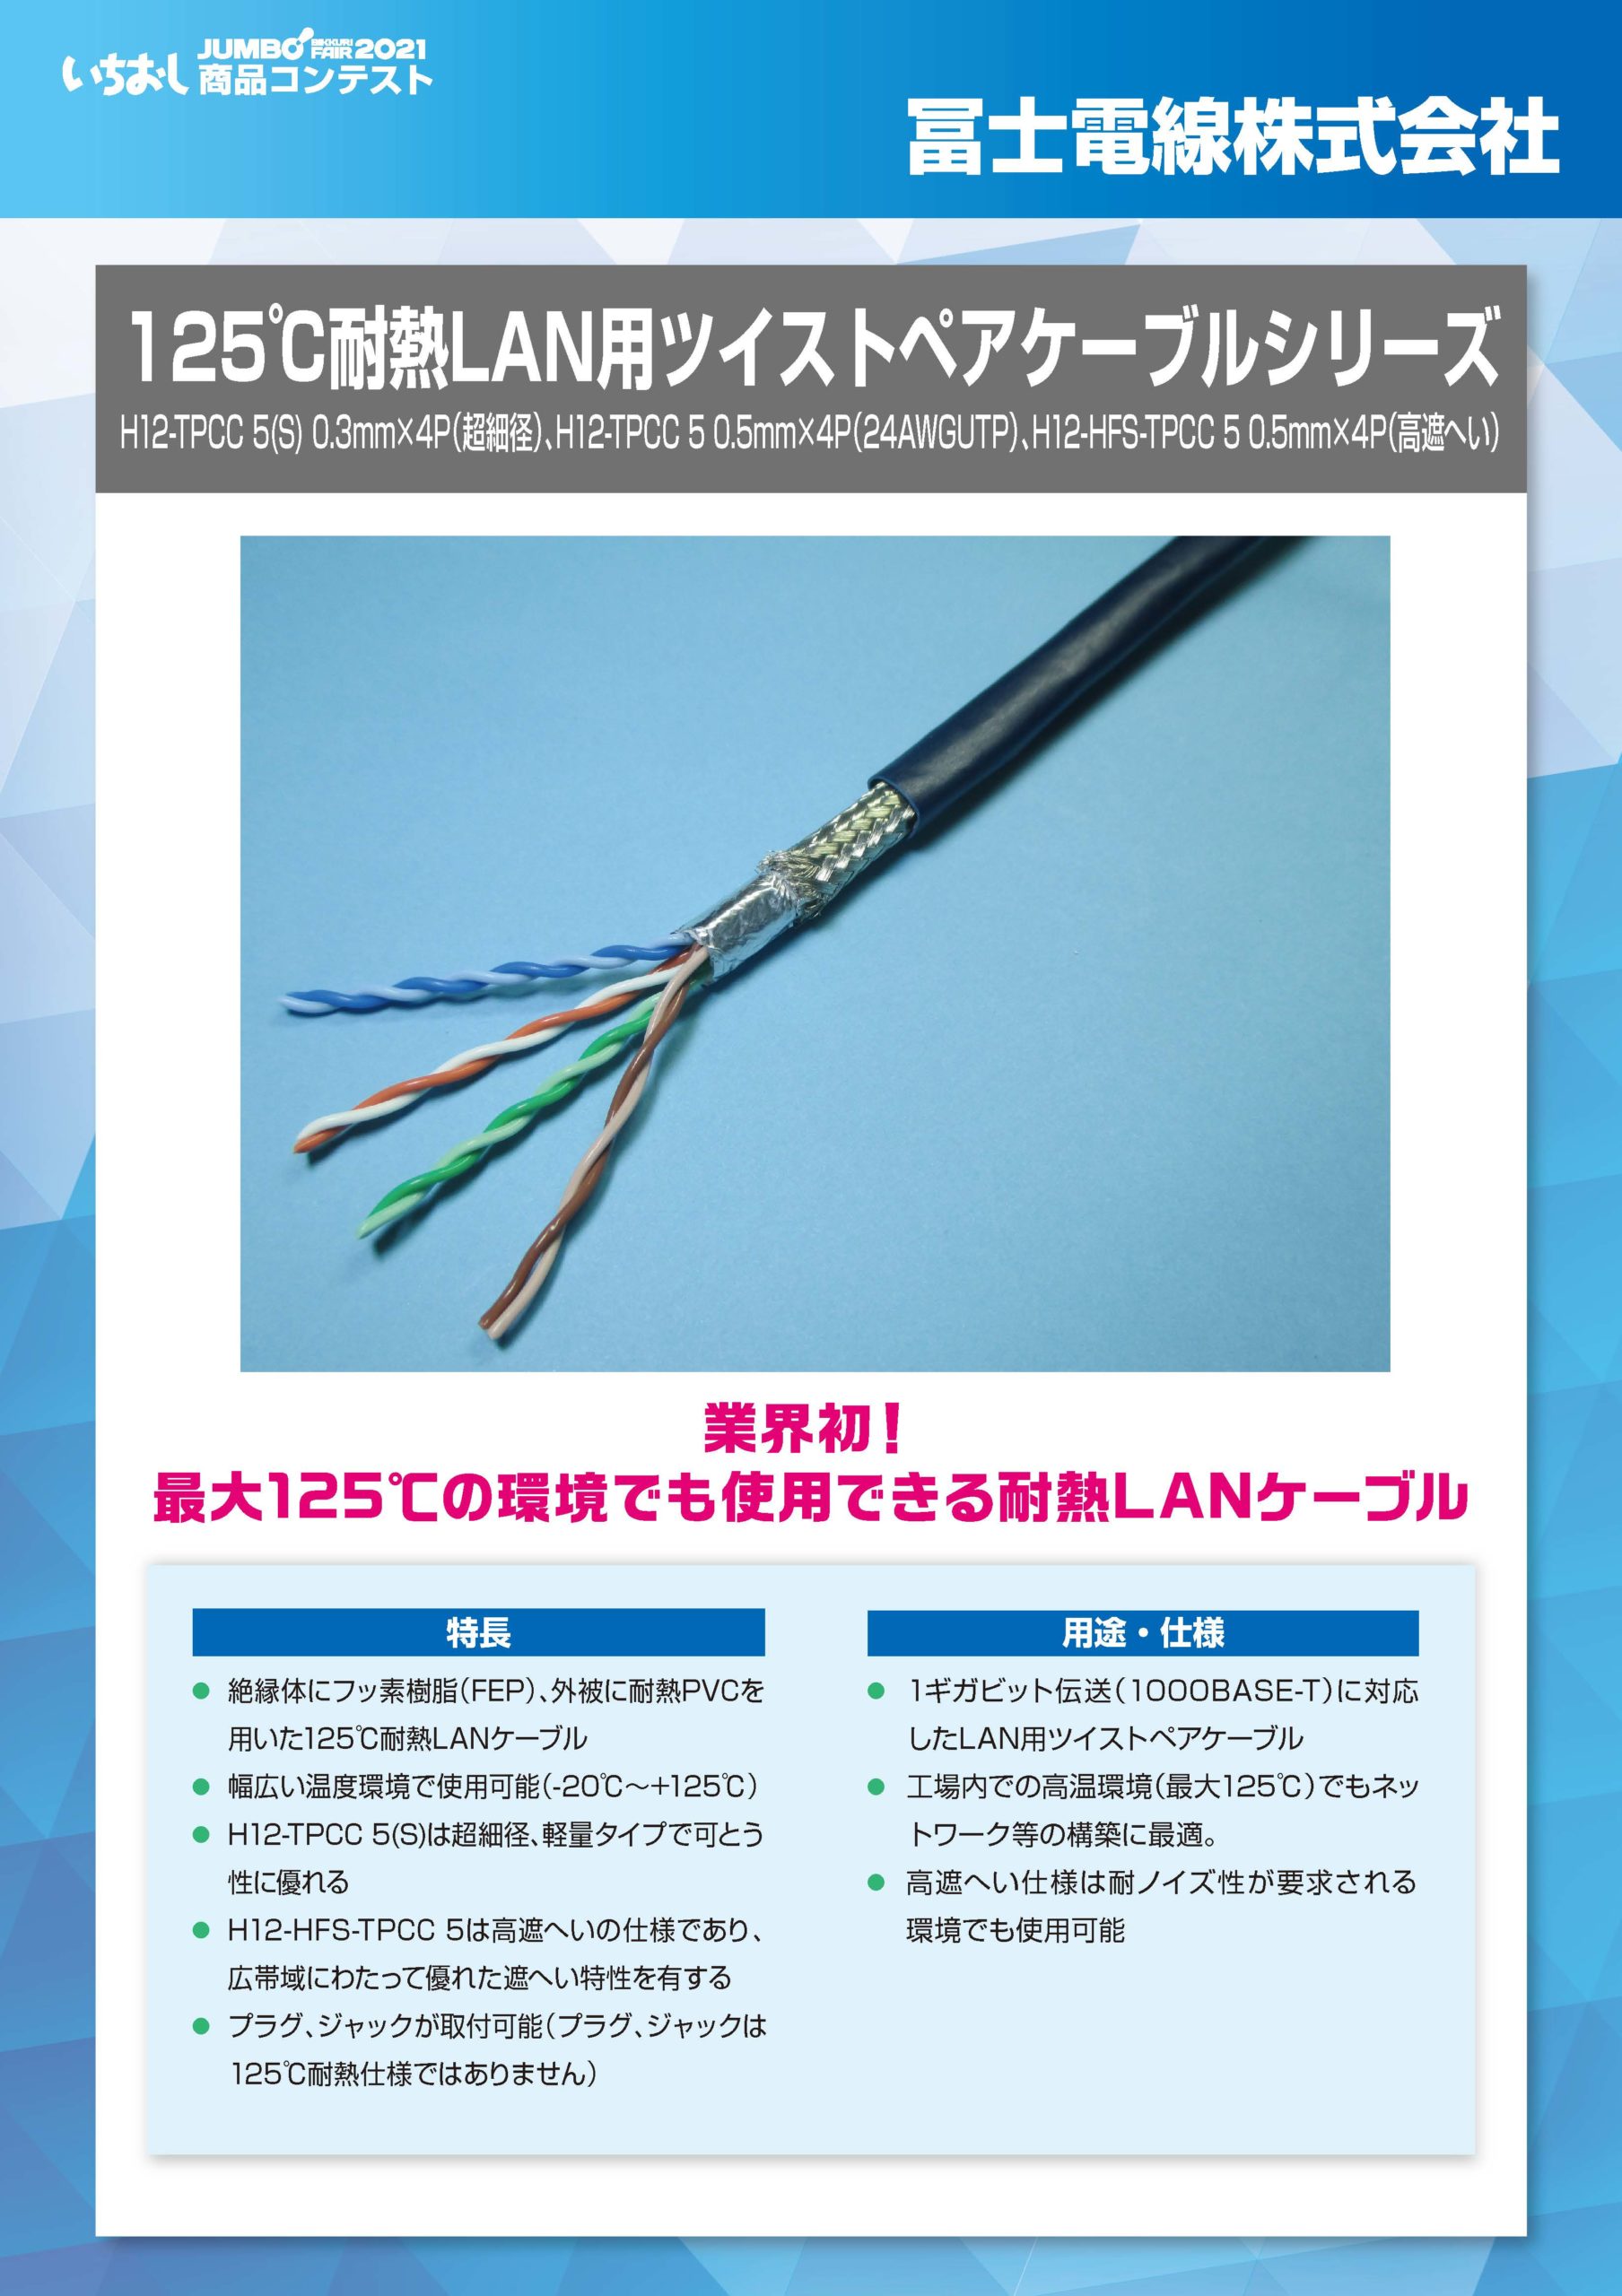 「125℃耐熱LAN用ツイストペアケーブルシリーズ」冨士電線株式会社の画像